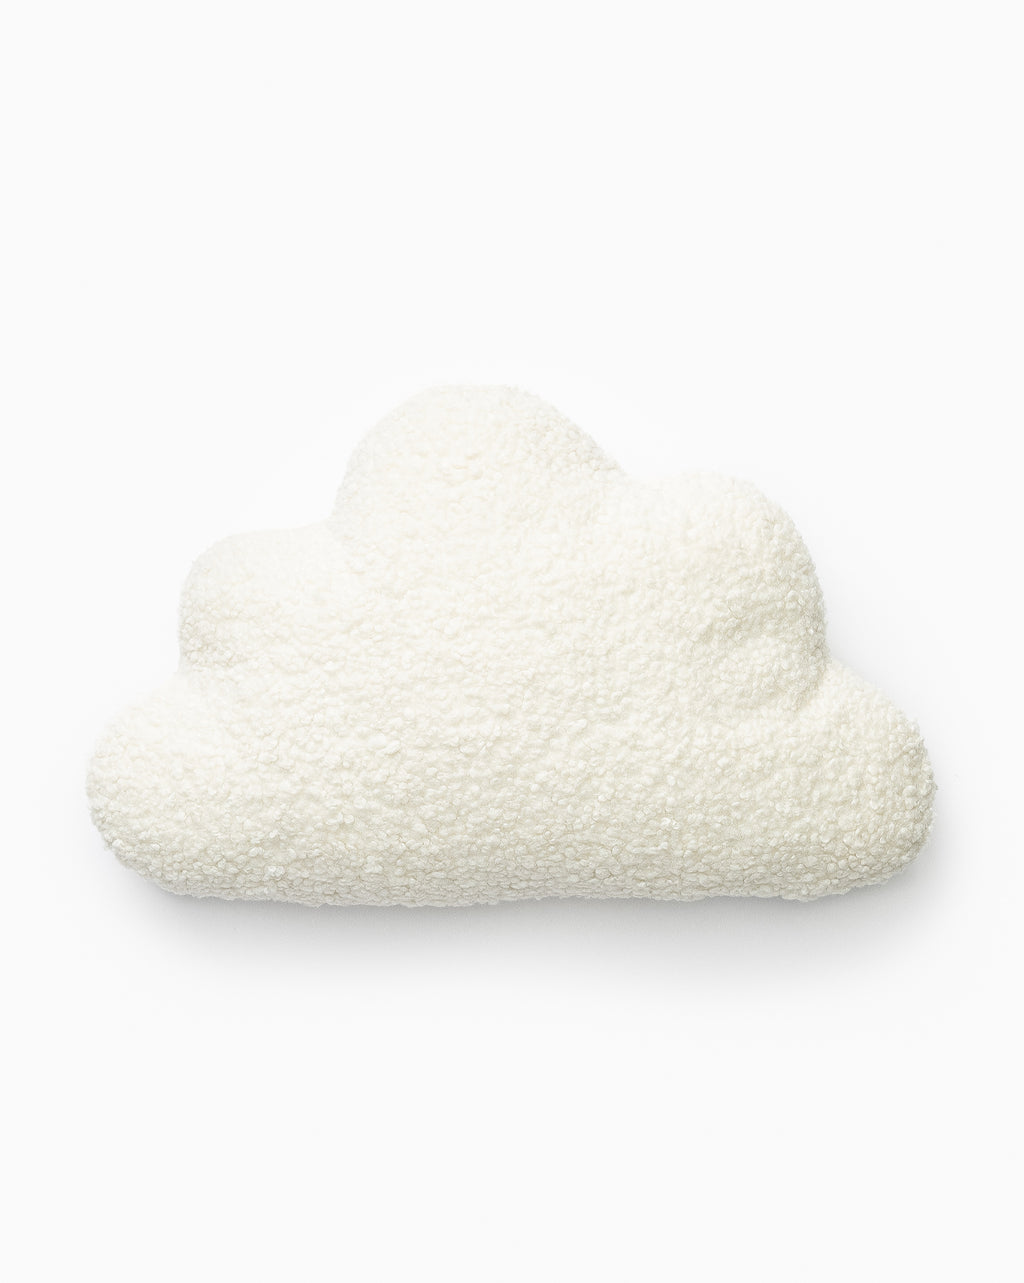 Cozy Cloud Pillow – Cloud's Marketplace